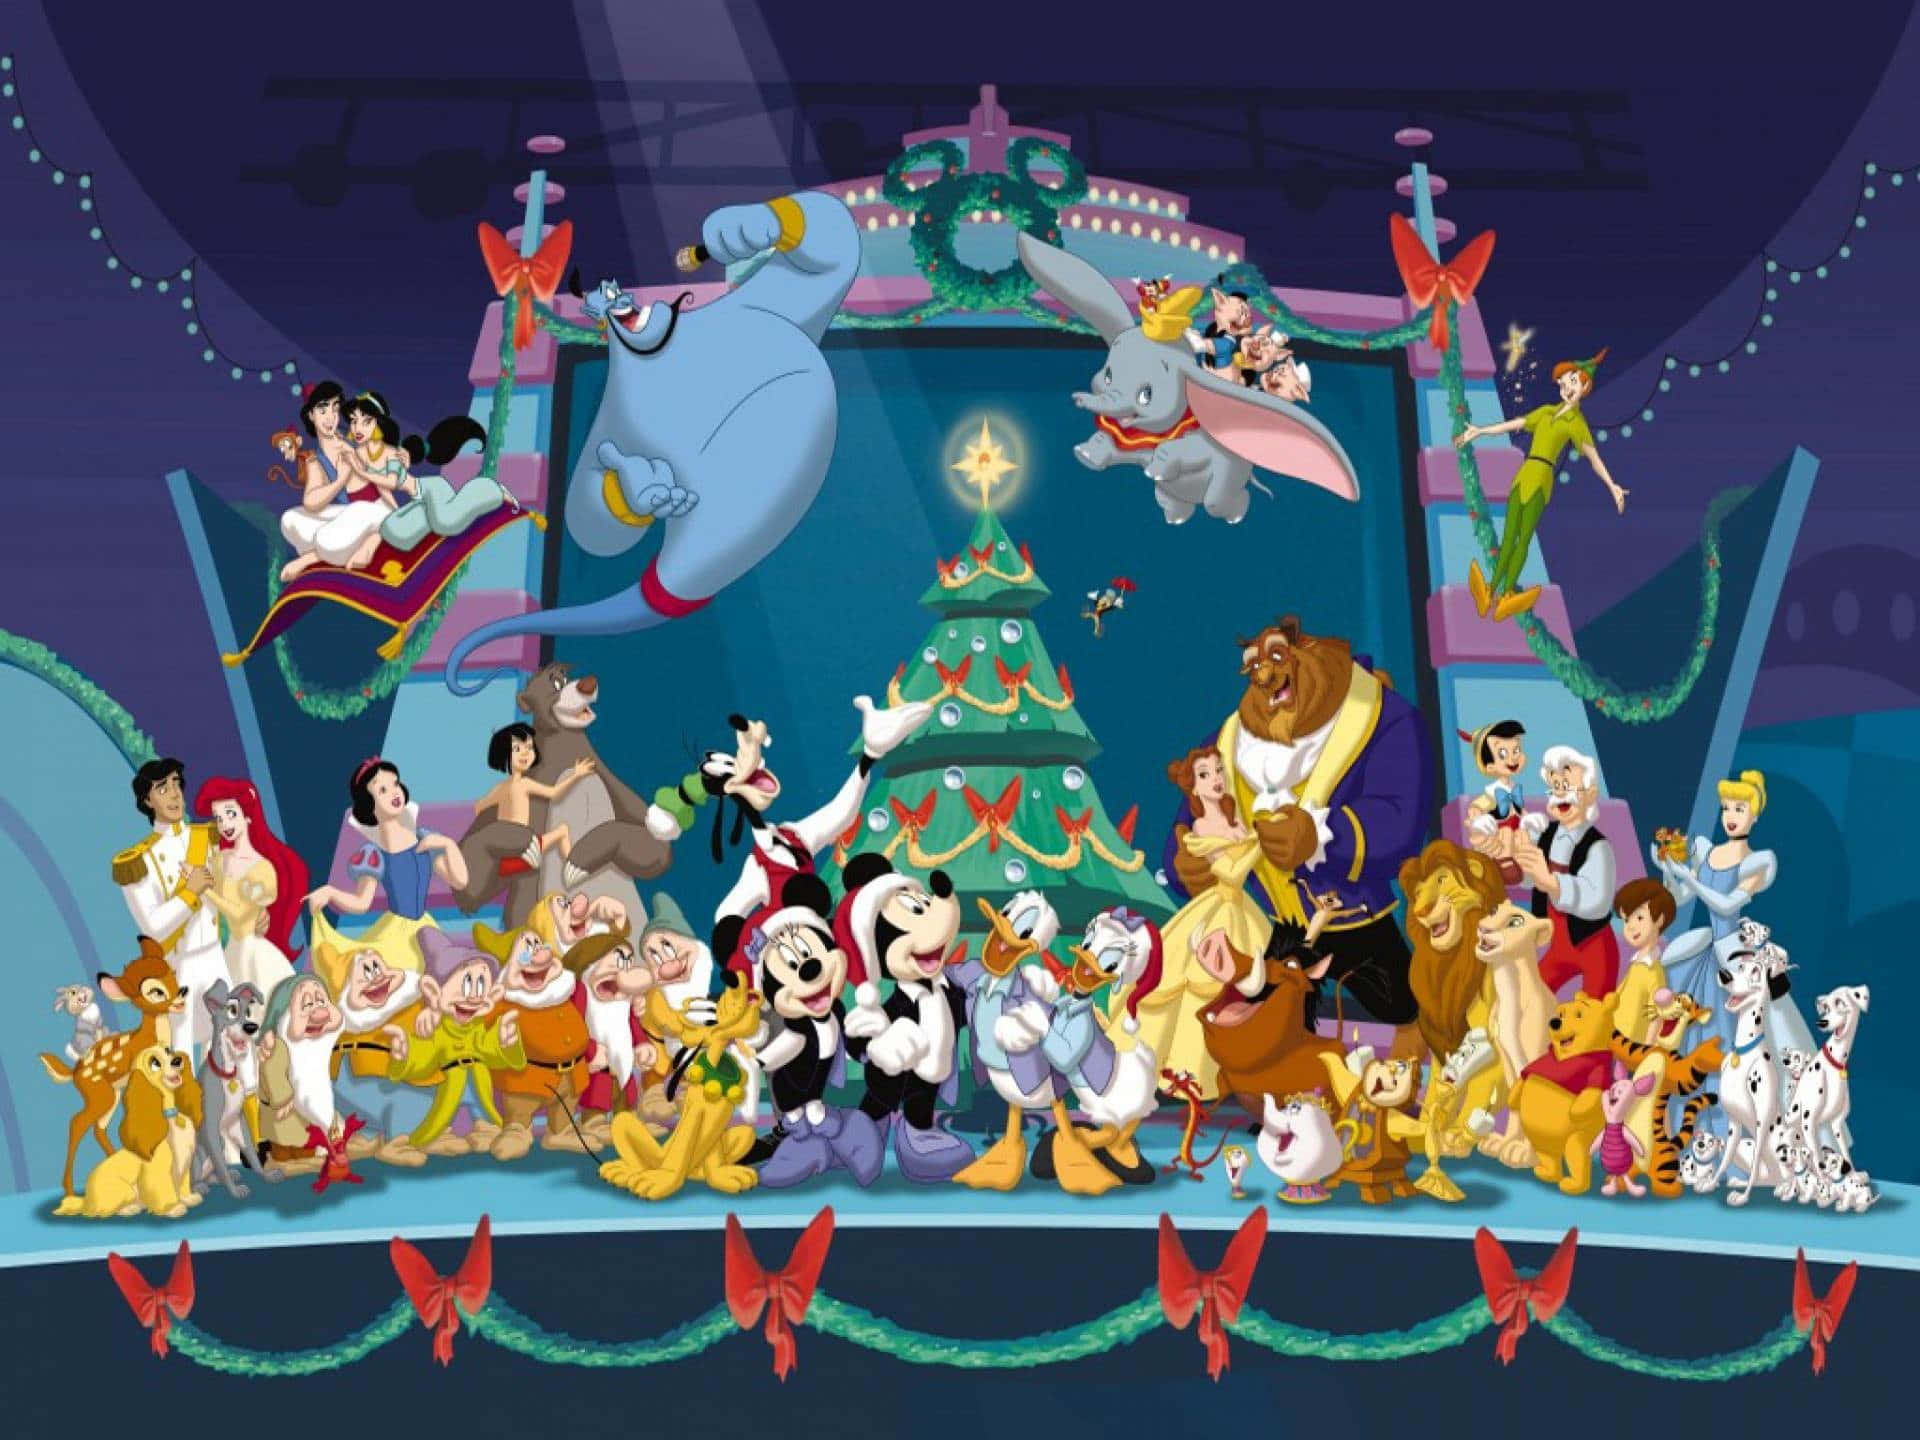 Wallpaperfå Den Klassiska Förtrollade Disney-världen Att Leva Med En Jul-tema Ipad-bakgrundsbild. Wallpaper